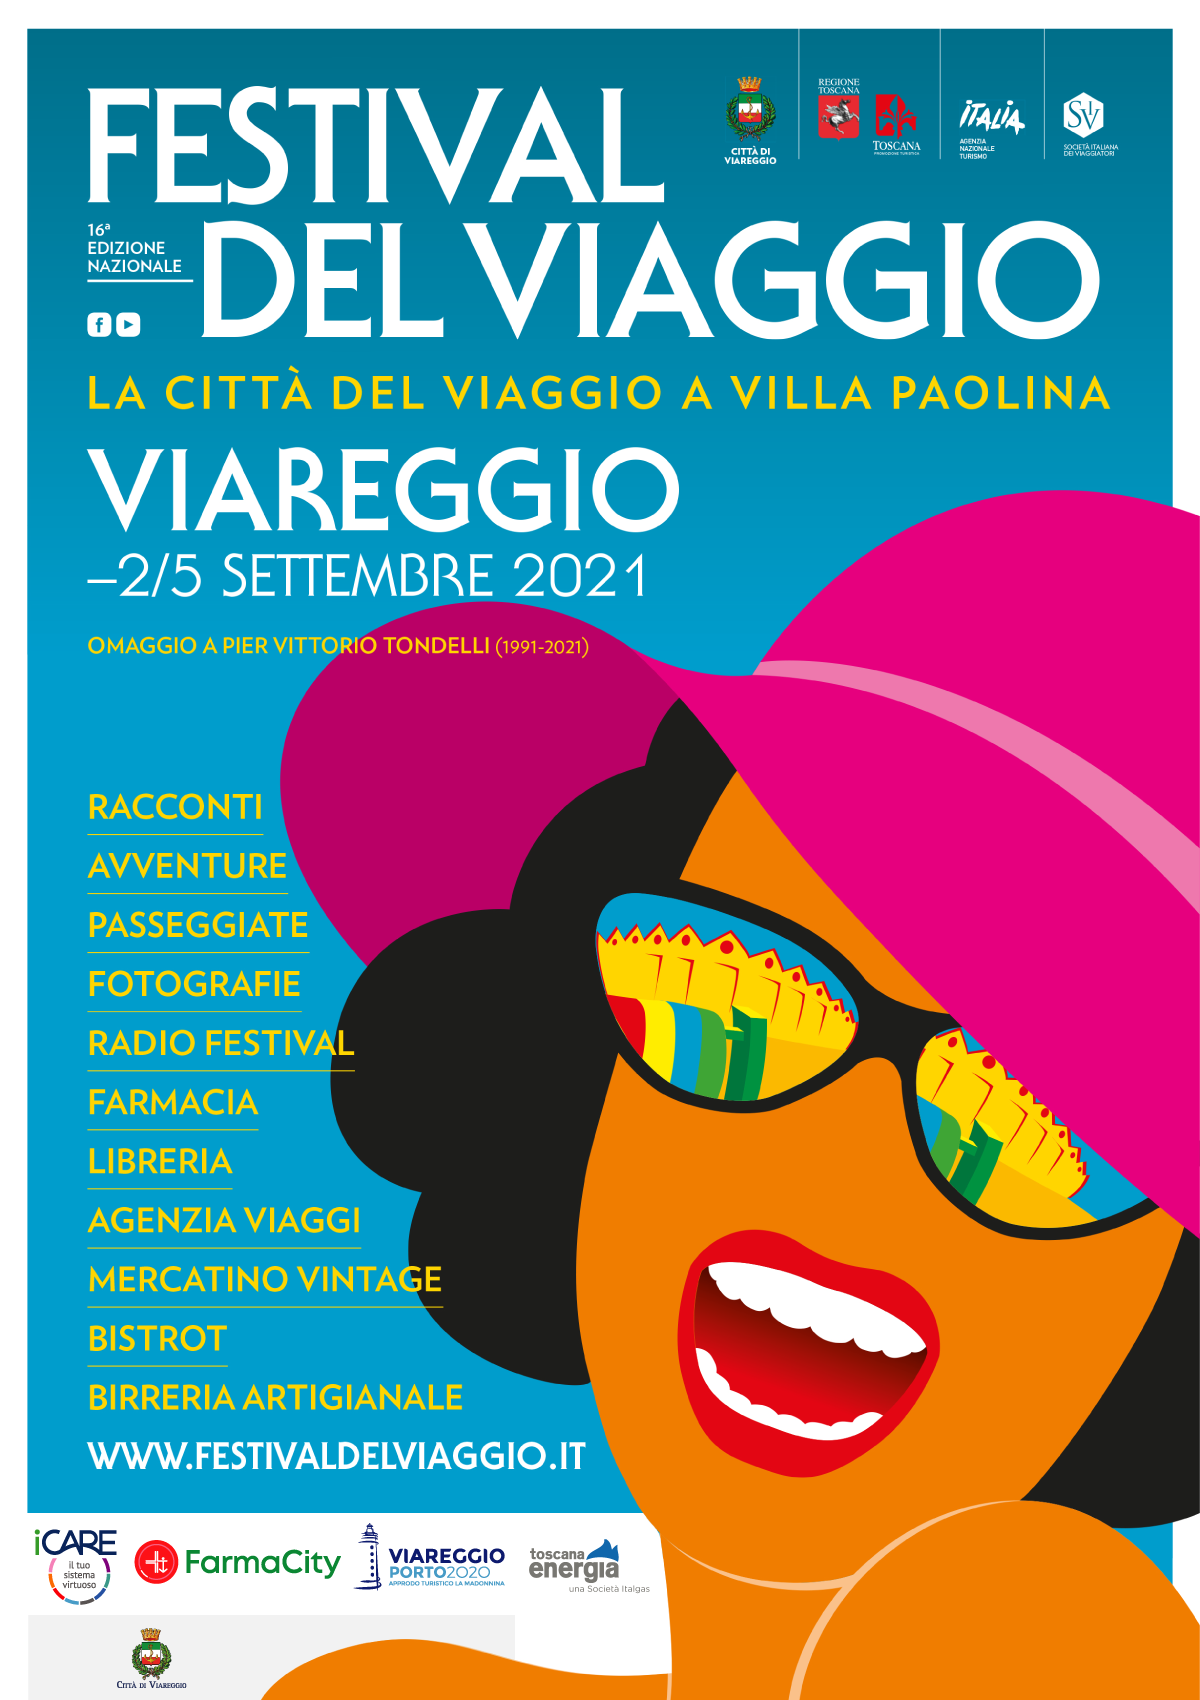 Festival del viaggio - Viareggio 2/5 Settembre 2021